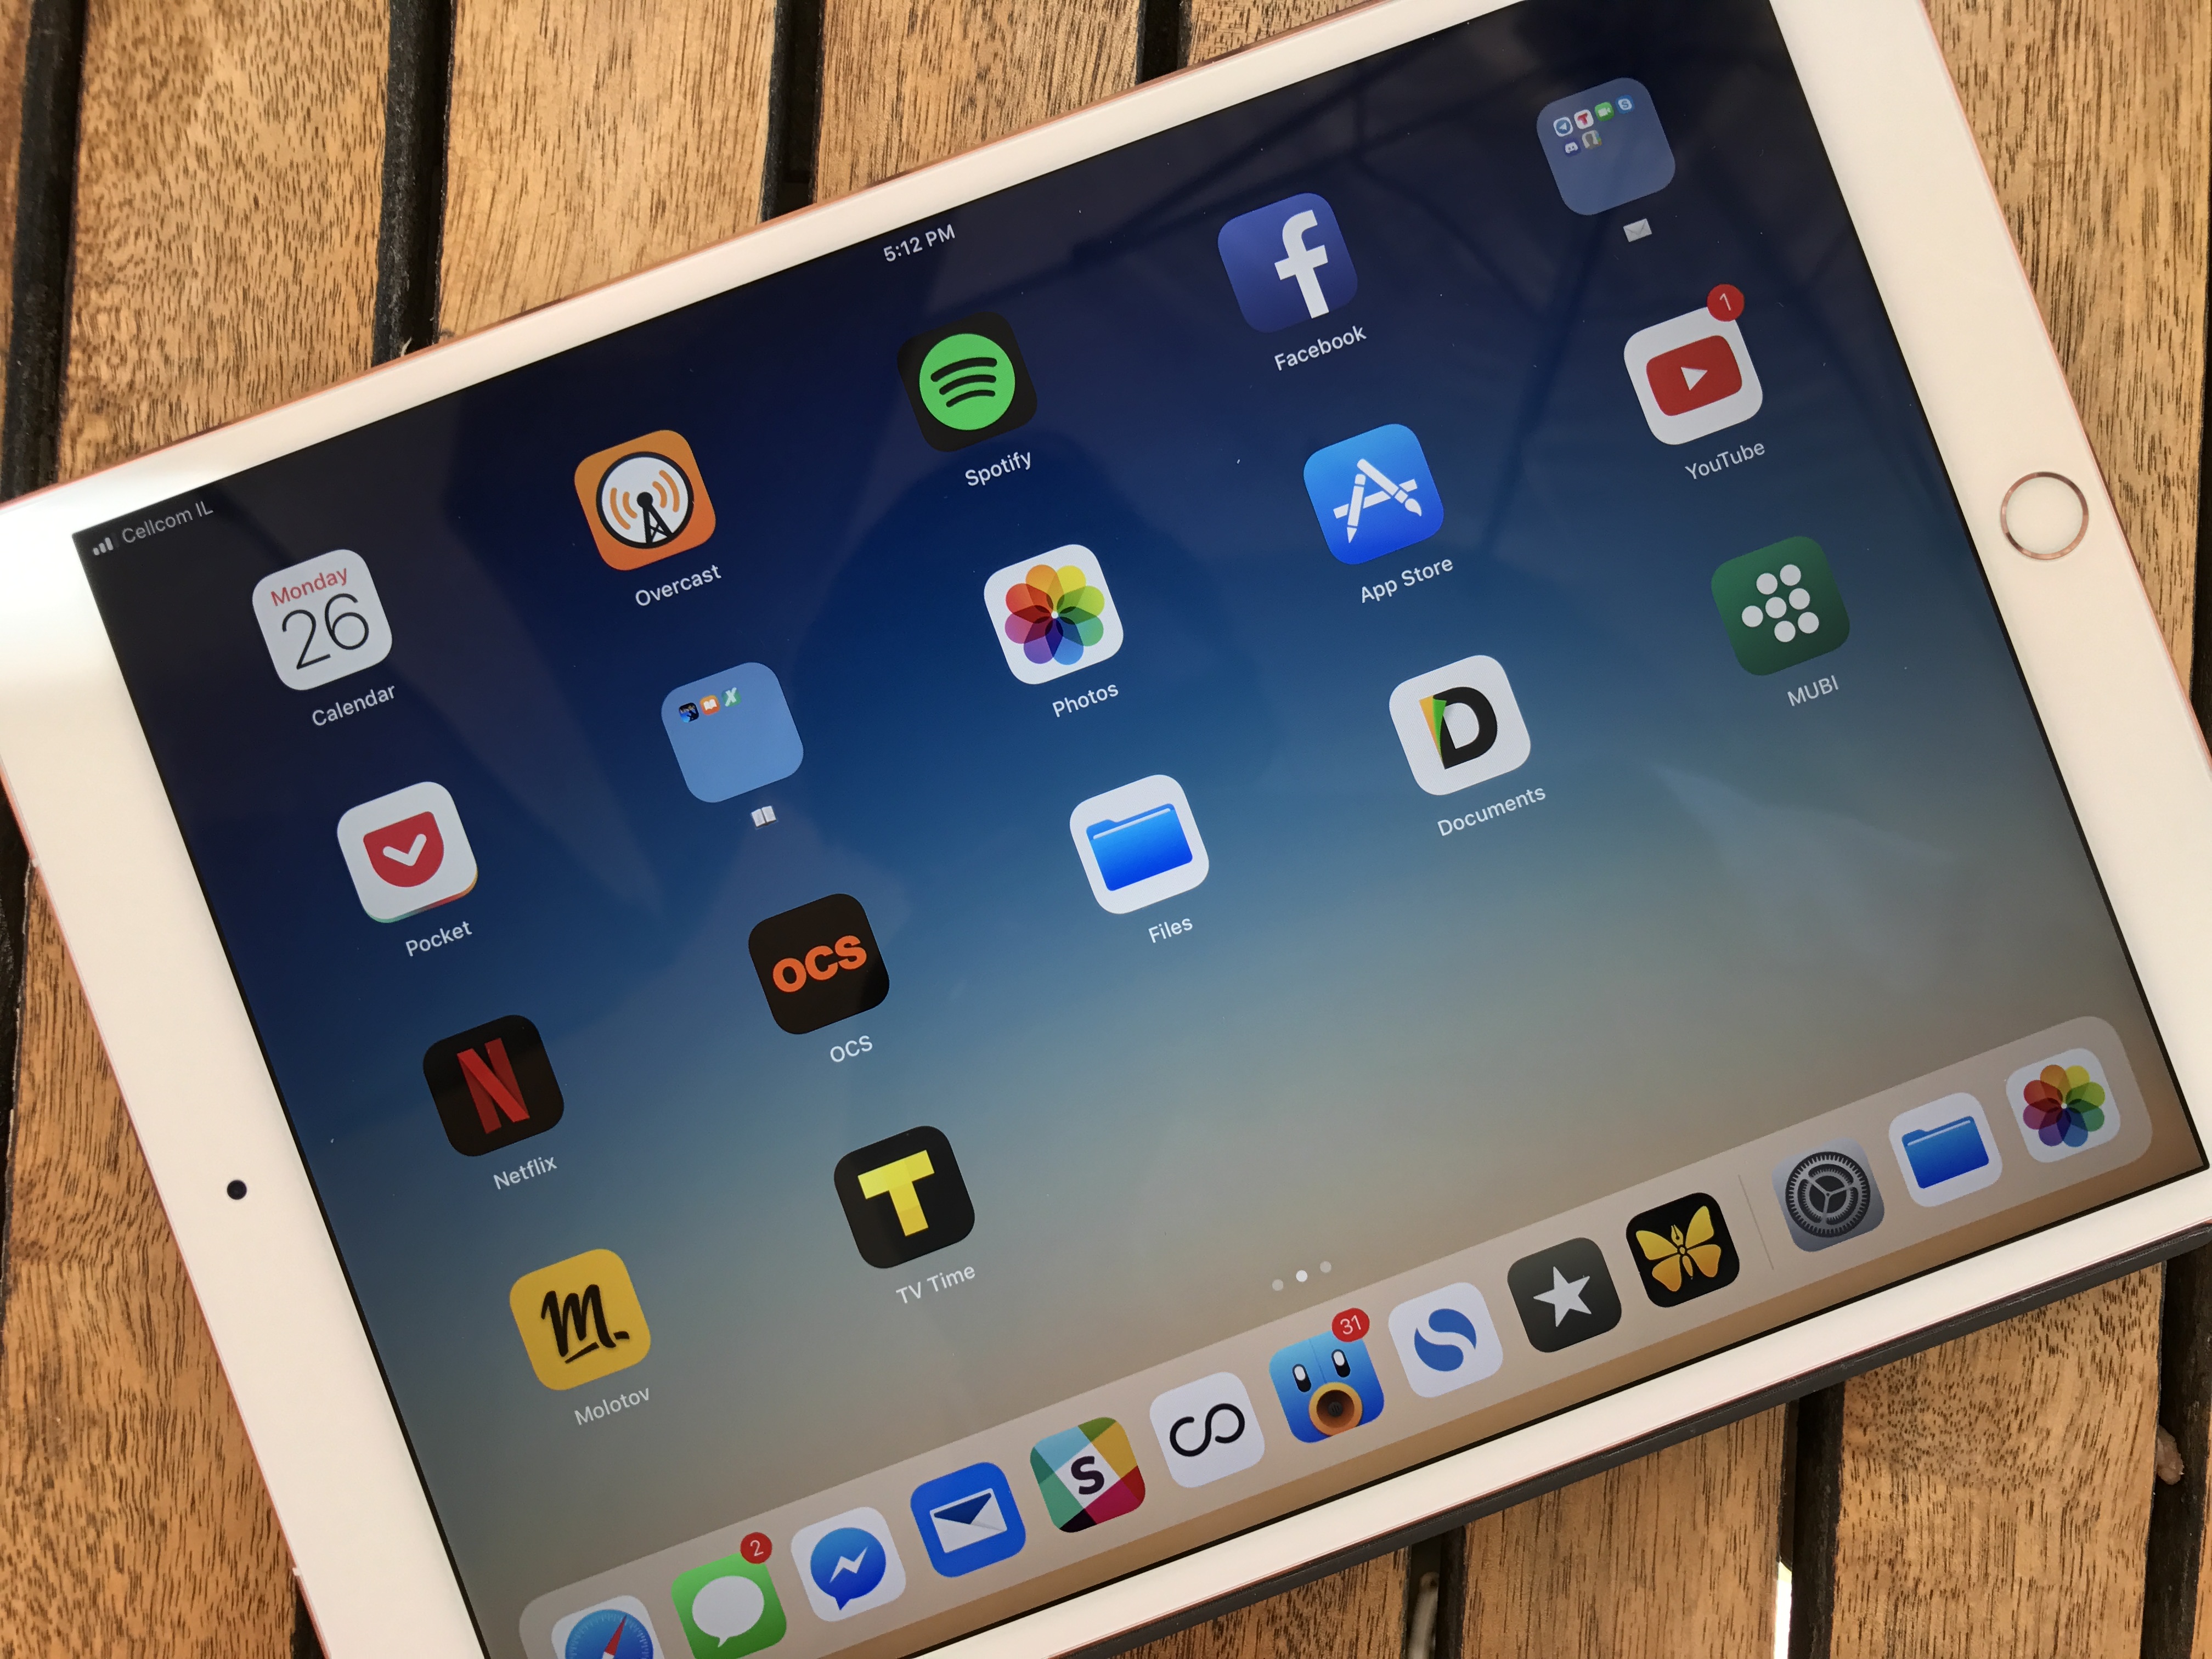 Nâng cấp ios 9.3.5 lên ios 10 beta cho iPhone, iPad